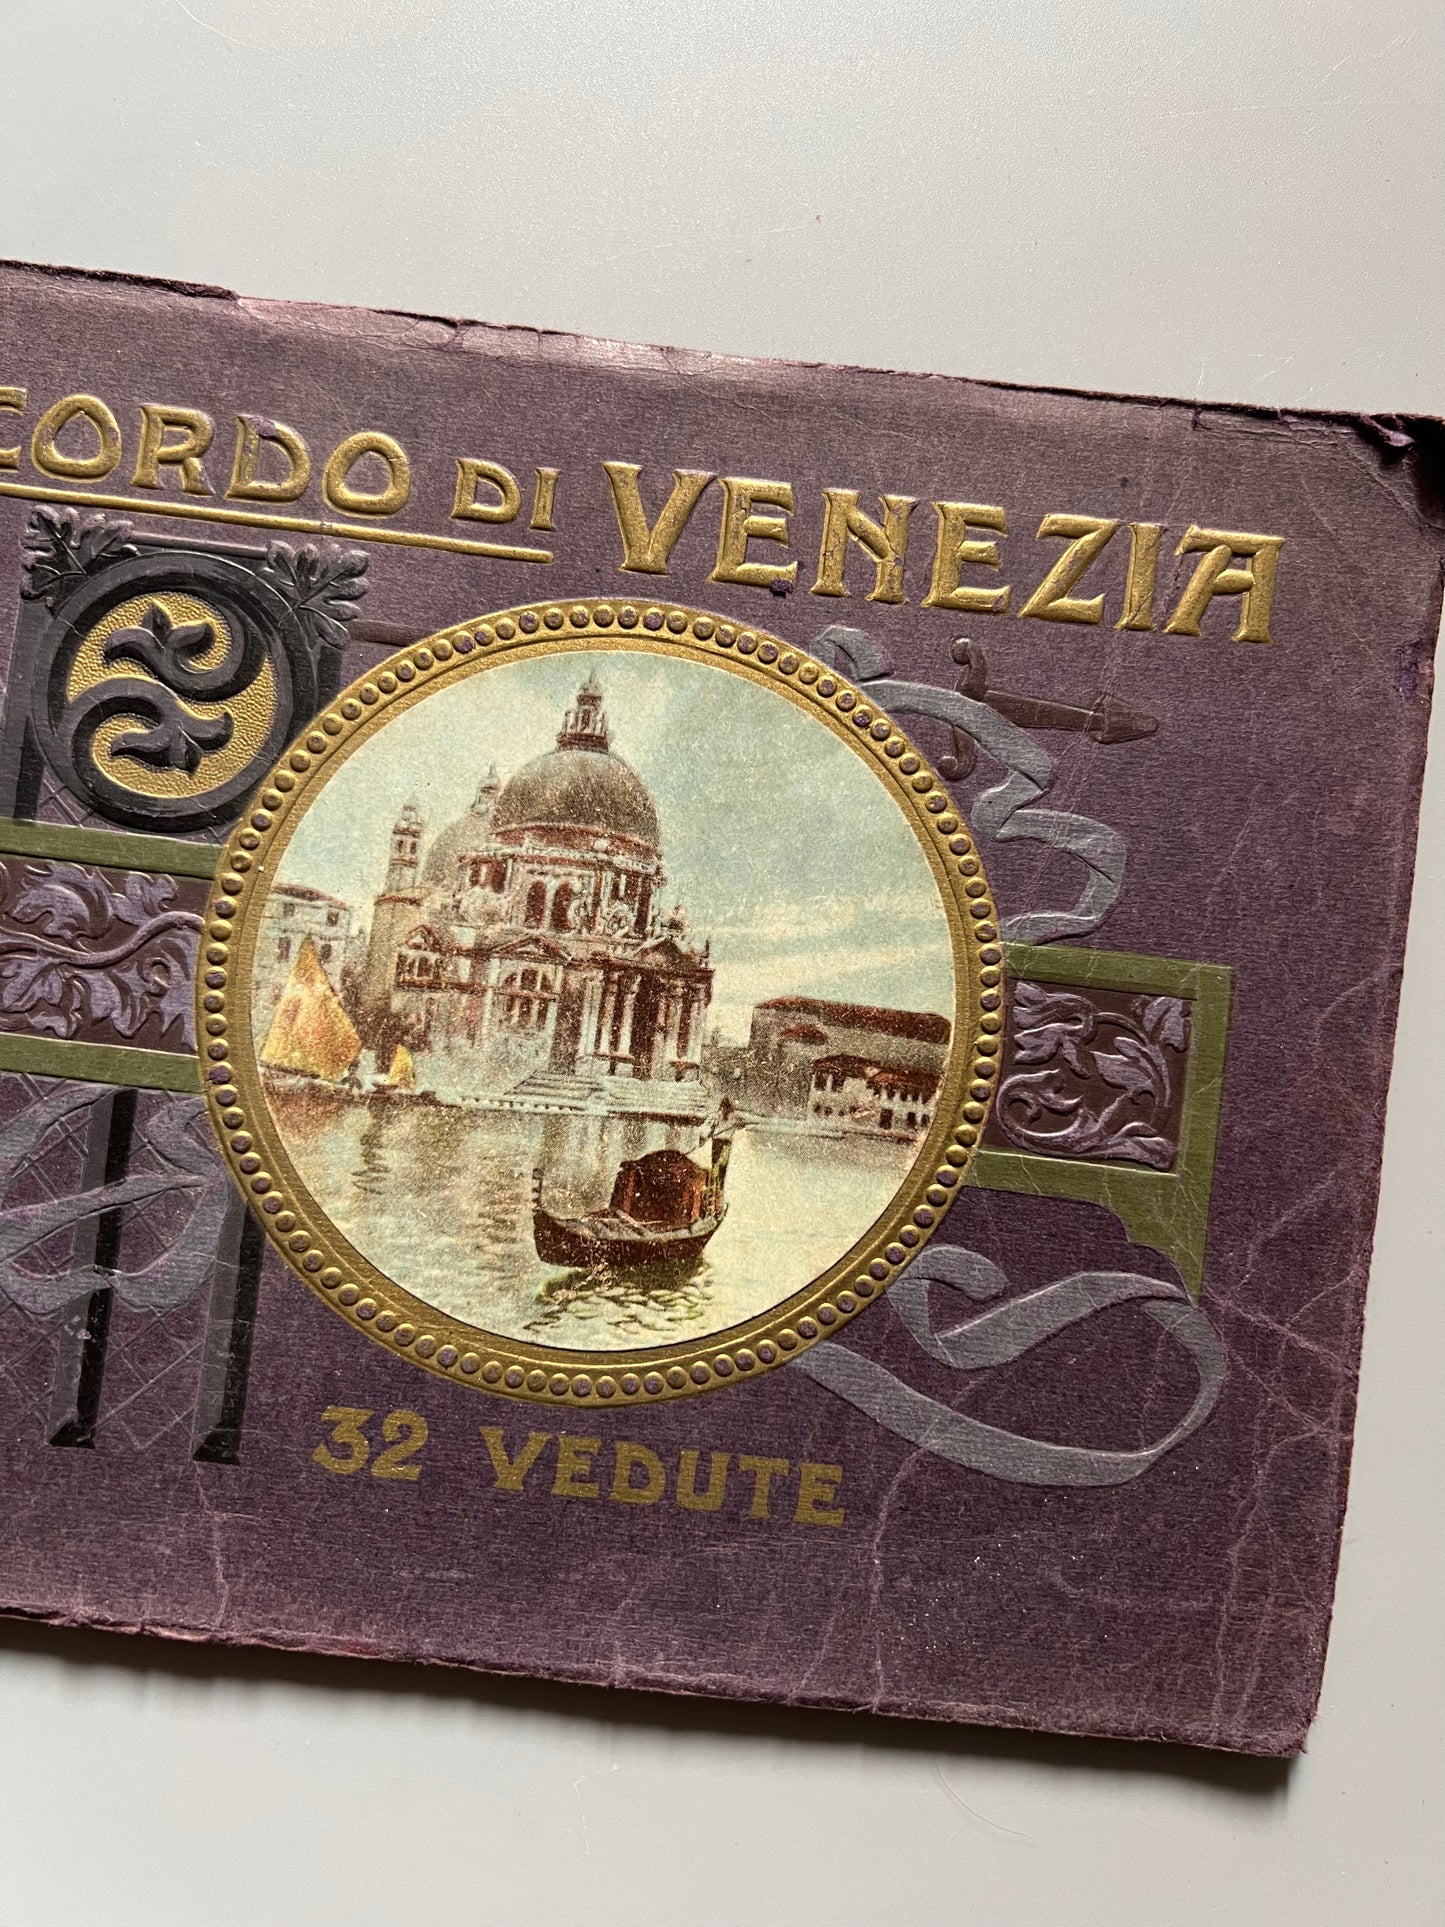 Souvenir de Venecia - Venecia, ca. 1920